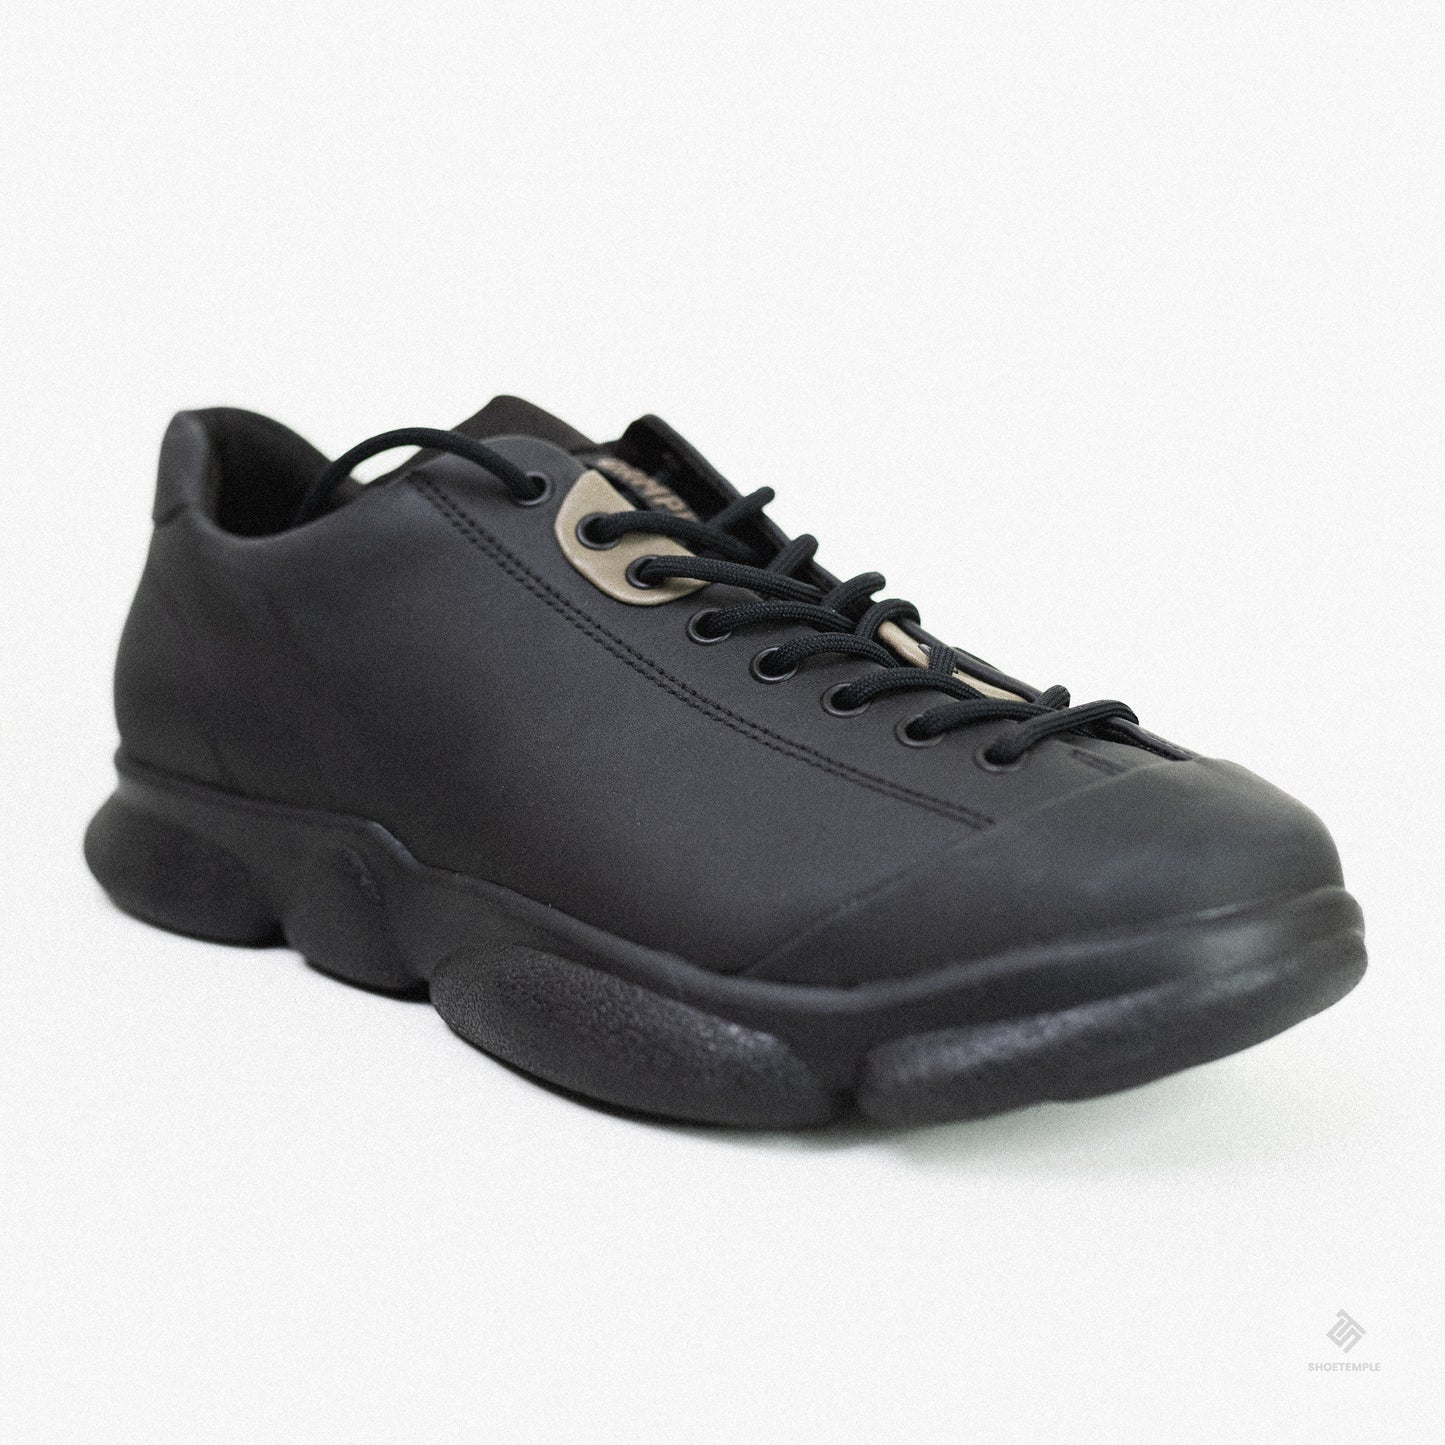 Camper - Black leather shoes for men